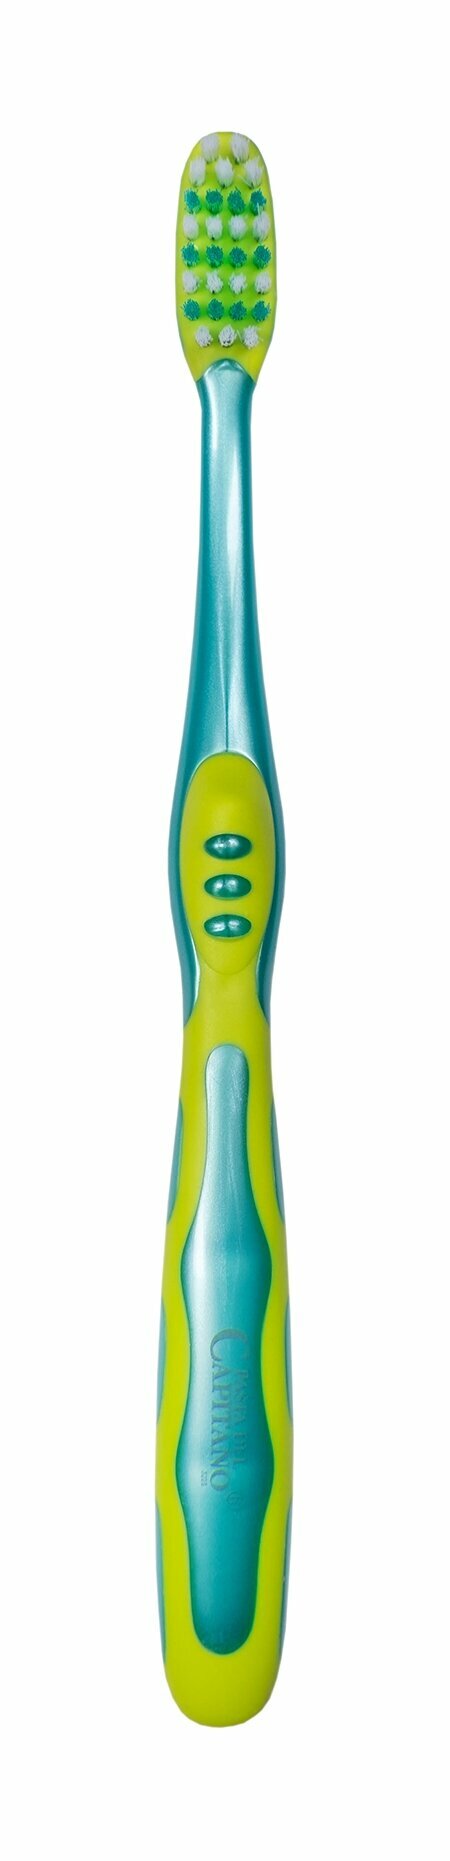 PASTA DEL CAPITANO Детская зубная щетка Pasta del Capitano Junior +6, Soft / Мягкая, зеленая